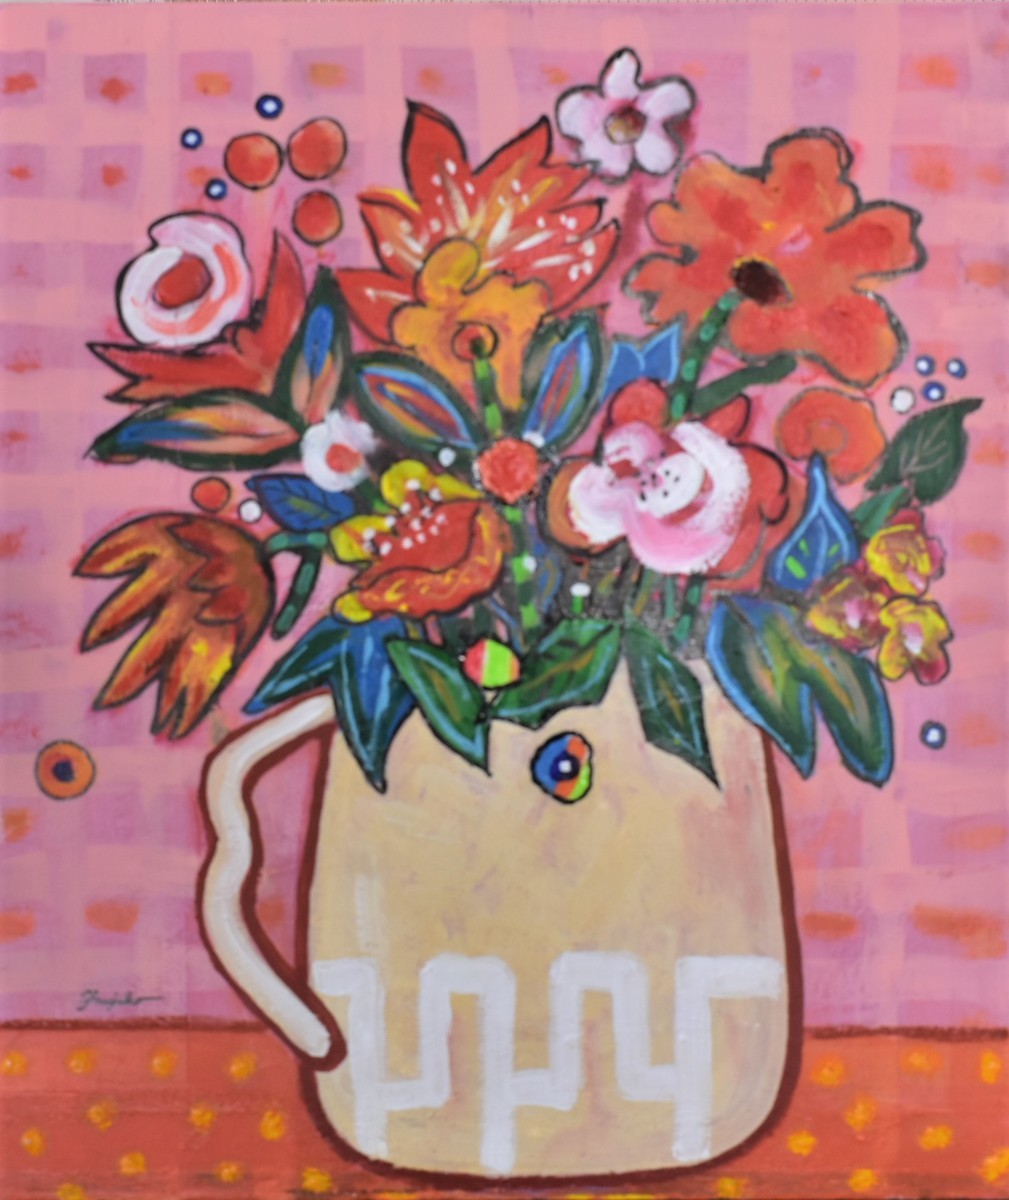 [Galería Masamitsu] Fujiko Shirai 10F Flores y pintura occidental del día de la alegría con marco [50, 000 artículos a la venta! Puedes encontrar tu trabajo favorito], cuadro, pintura al óleo, pintura de naturaleza muerta